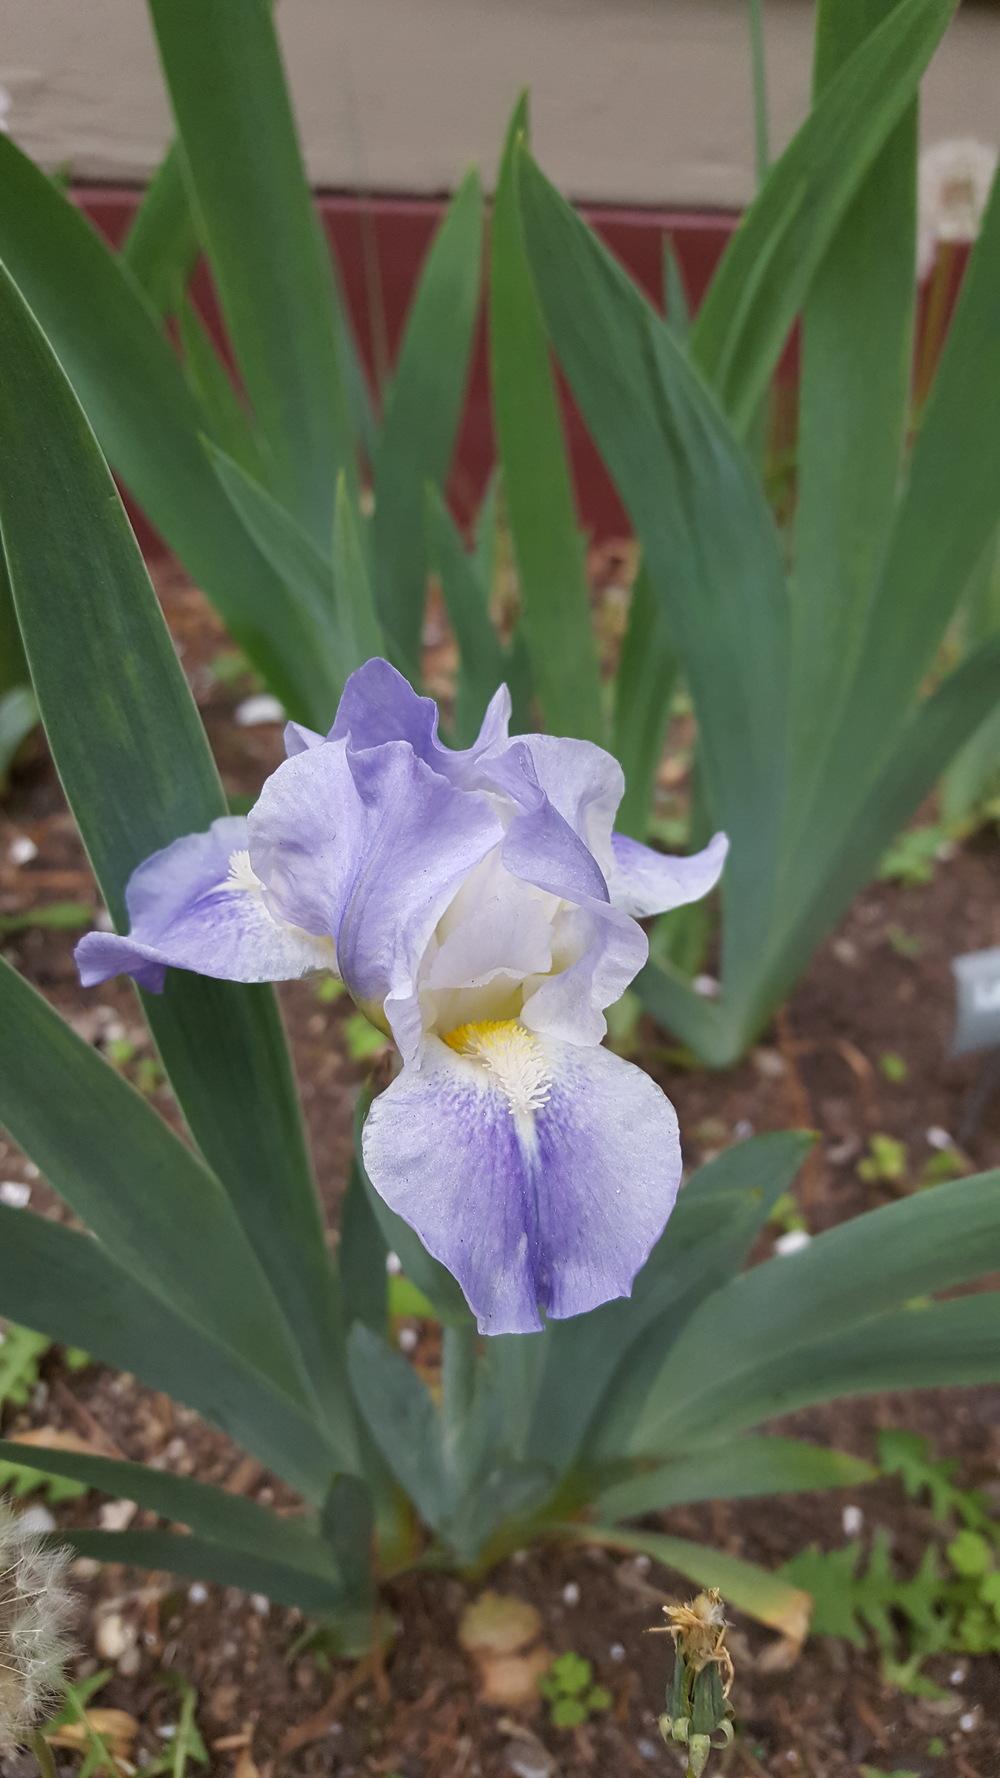 Photo of Standard Dwarf Bearded Iris (Iris 'Gemstar') uploaded by Dachsylady86